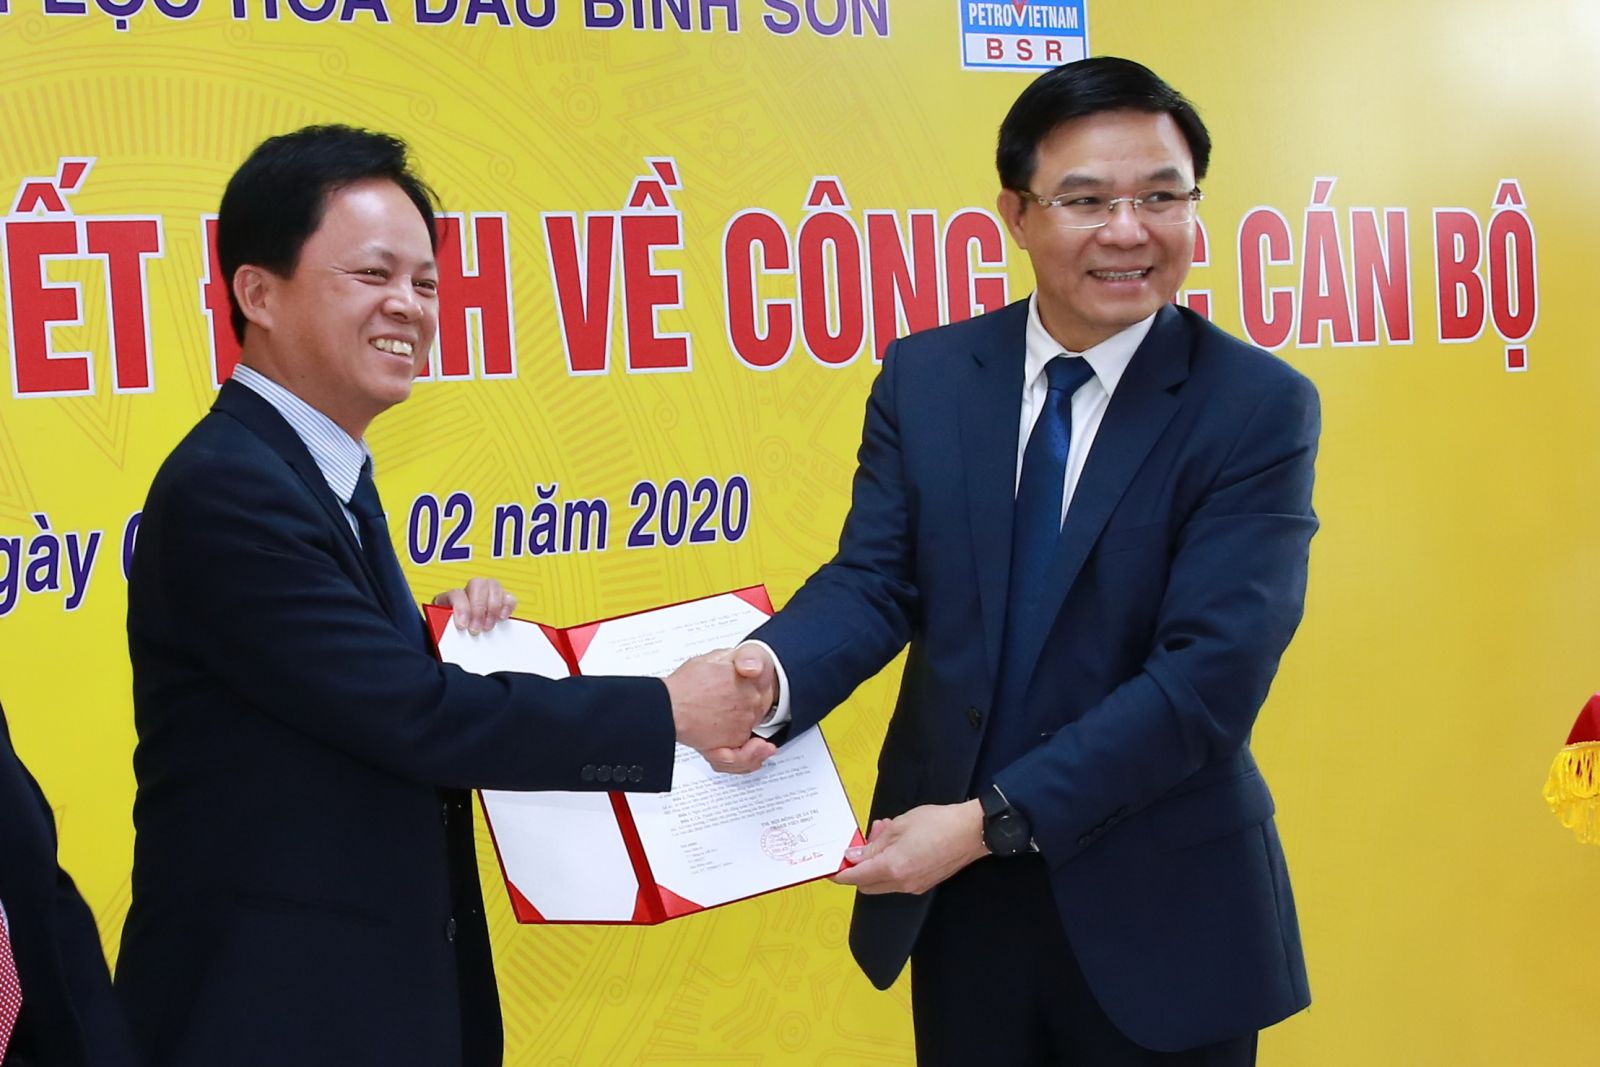 Tổng Giám đốc PVN Lê Mạnh Hùng trao Nghị quyết bầu ông Nguyễn Văn Hội (bìa trái) giữ chức Chủ tịch HĐQT Công ty cổ phần Lọc hóa dầu Bình Sơn